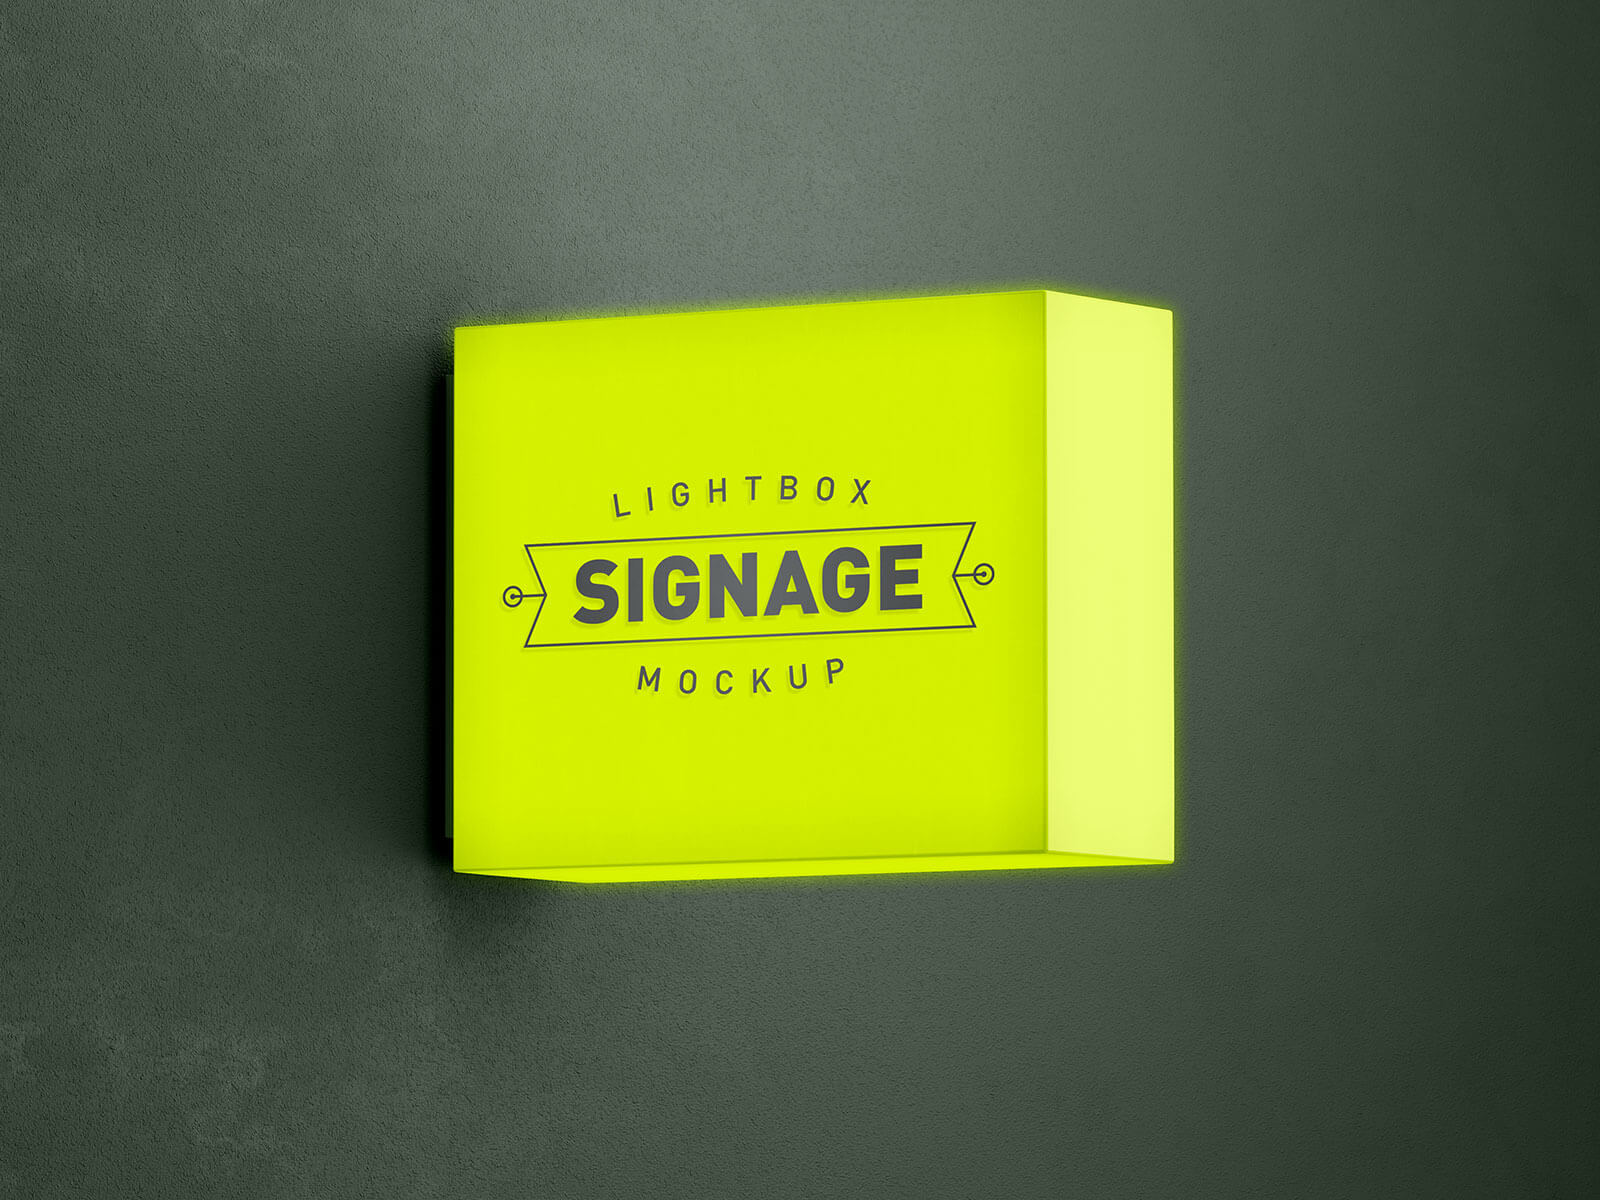 Free-Lightbox-Signage-Logo-Mockup-PSD